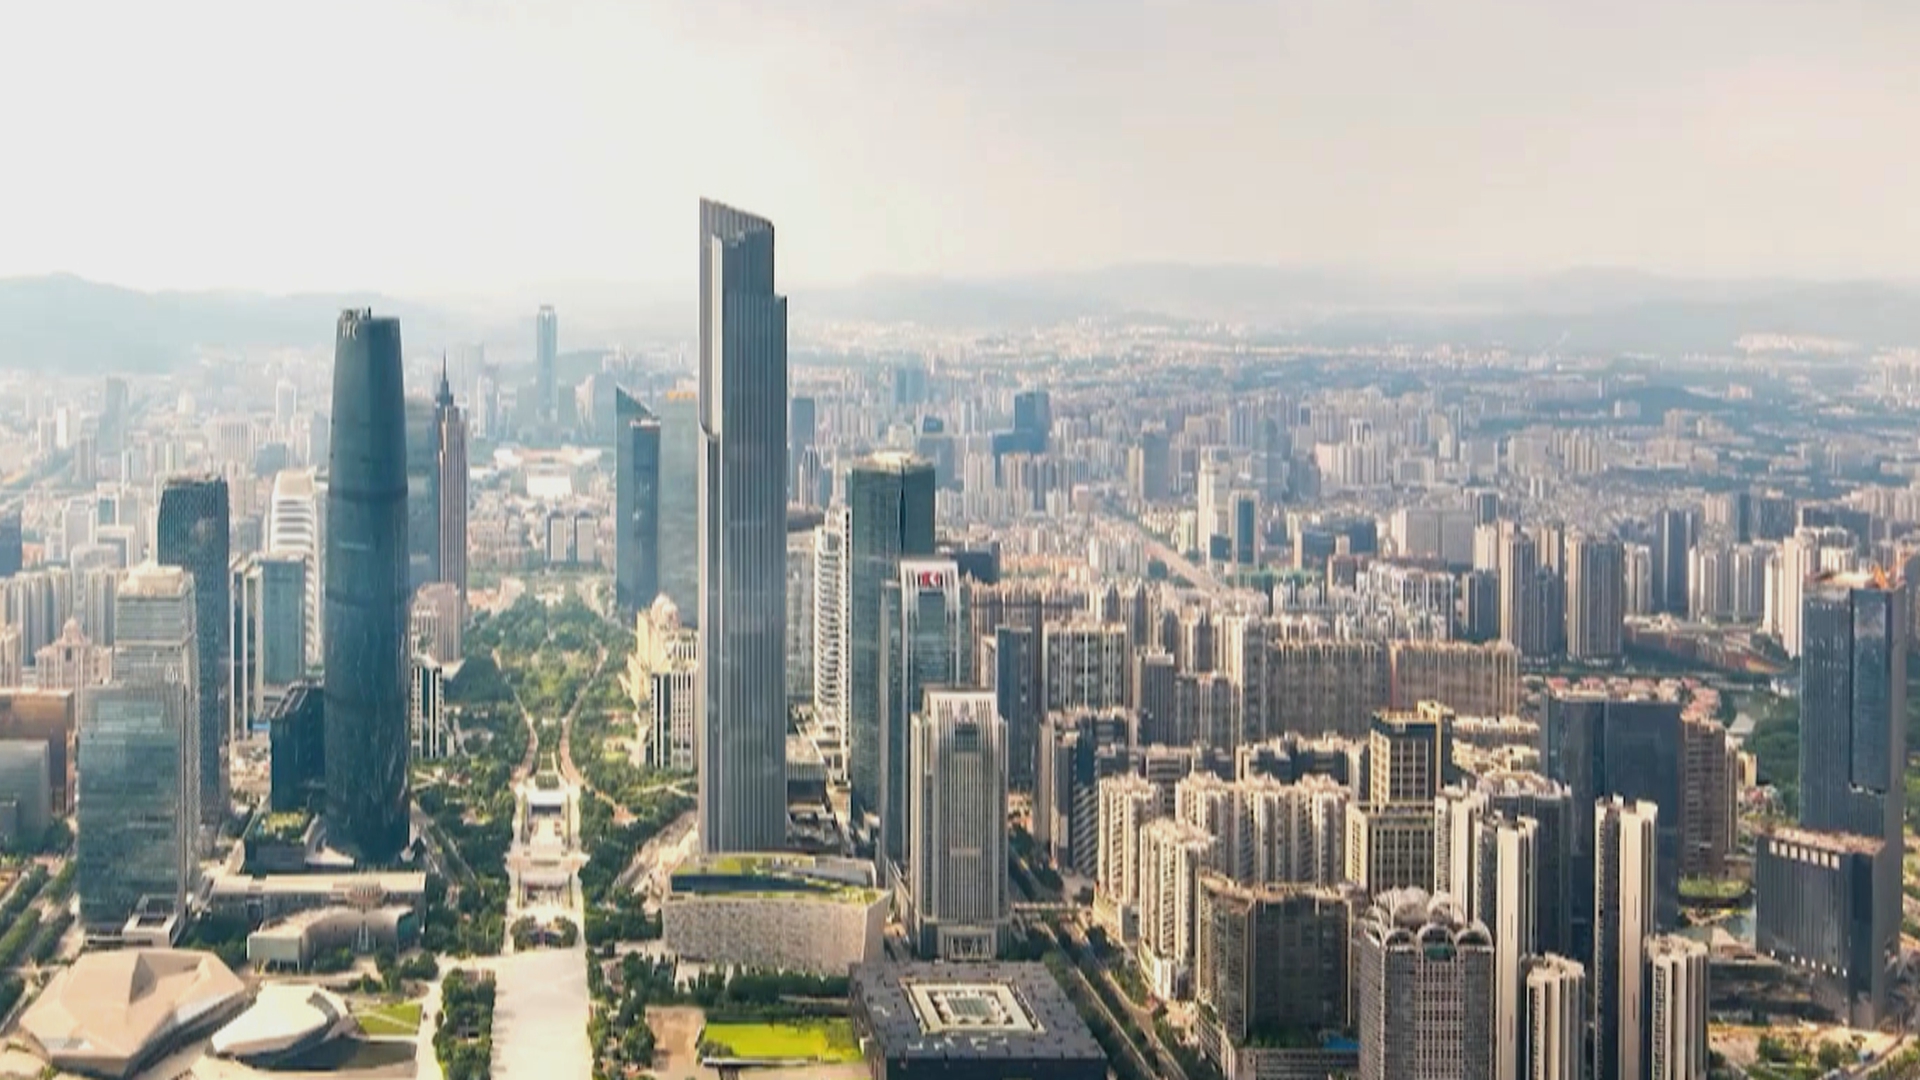 广州发布城市创新指数  五大维度指标表现亮眼